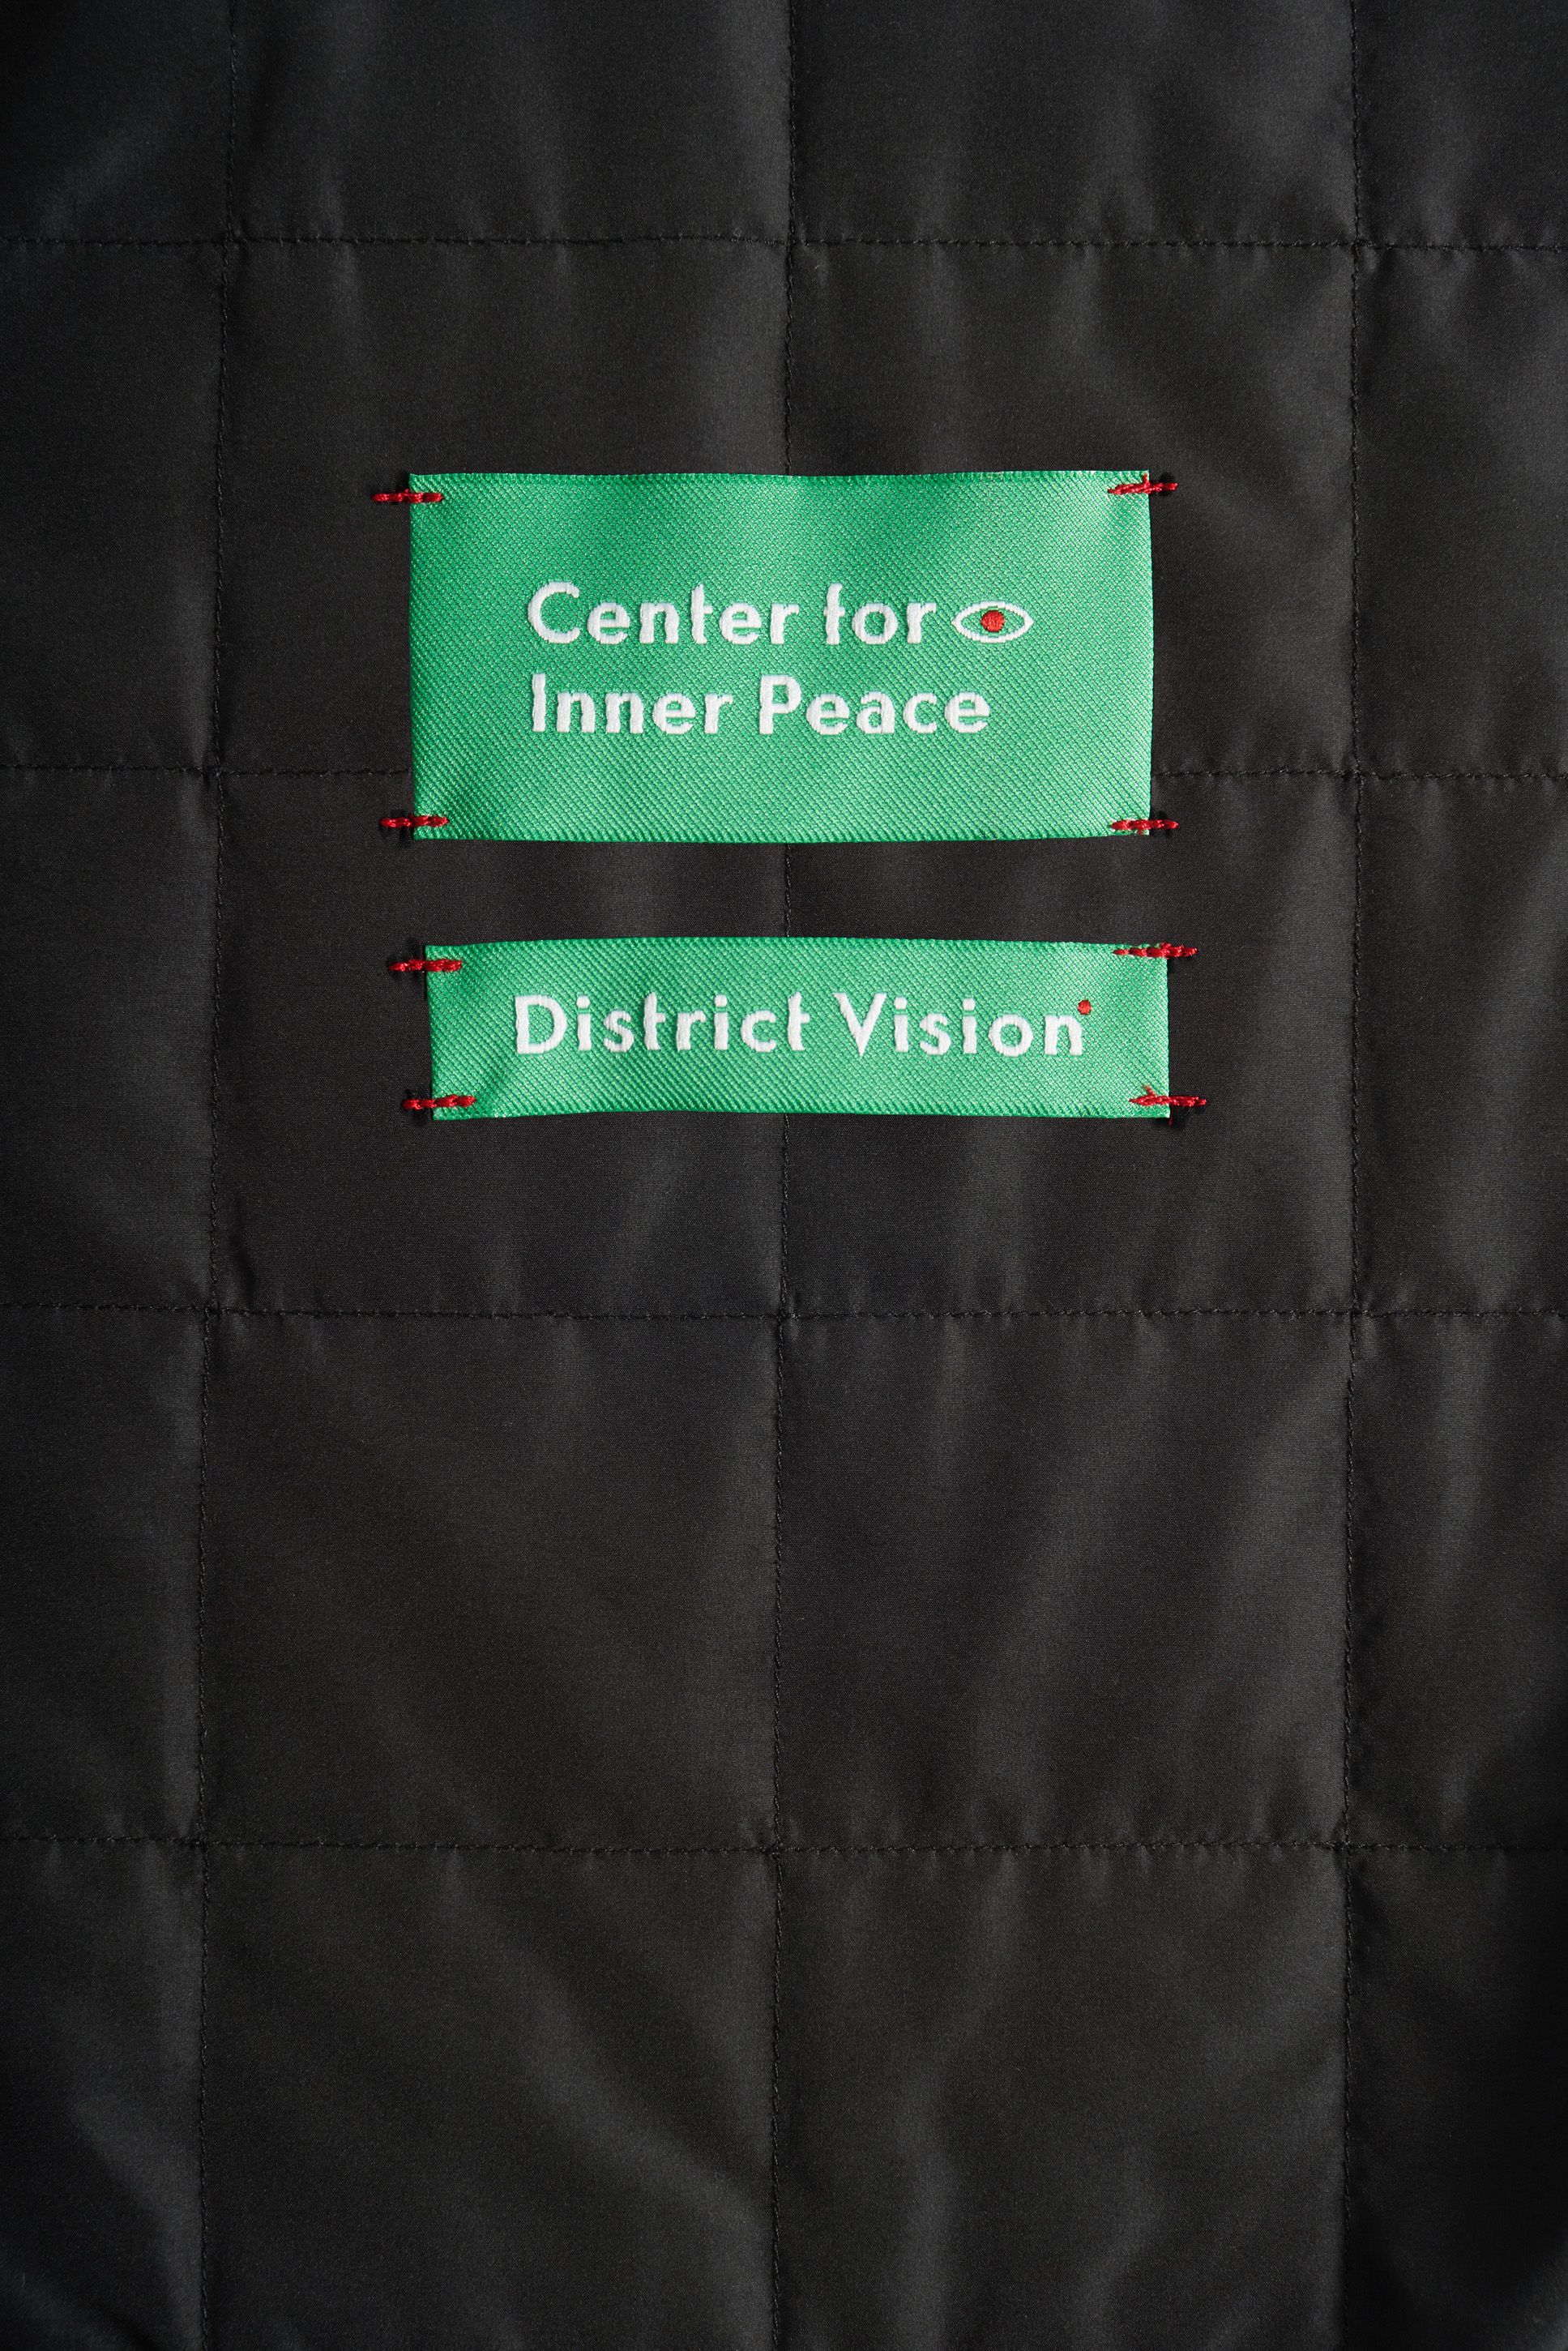 Ultralight Recycled Primaloft® Vest, Black